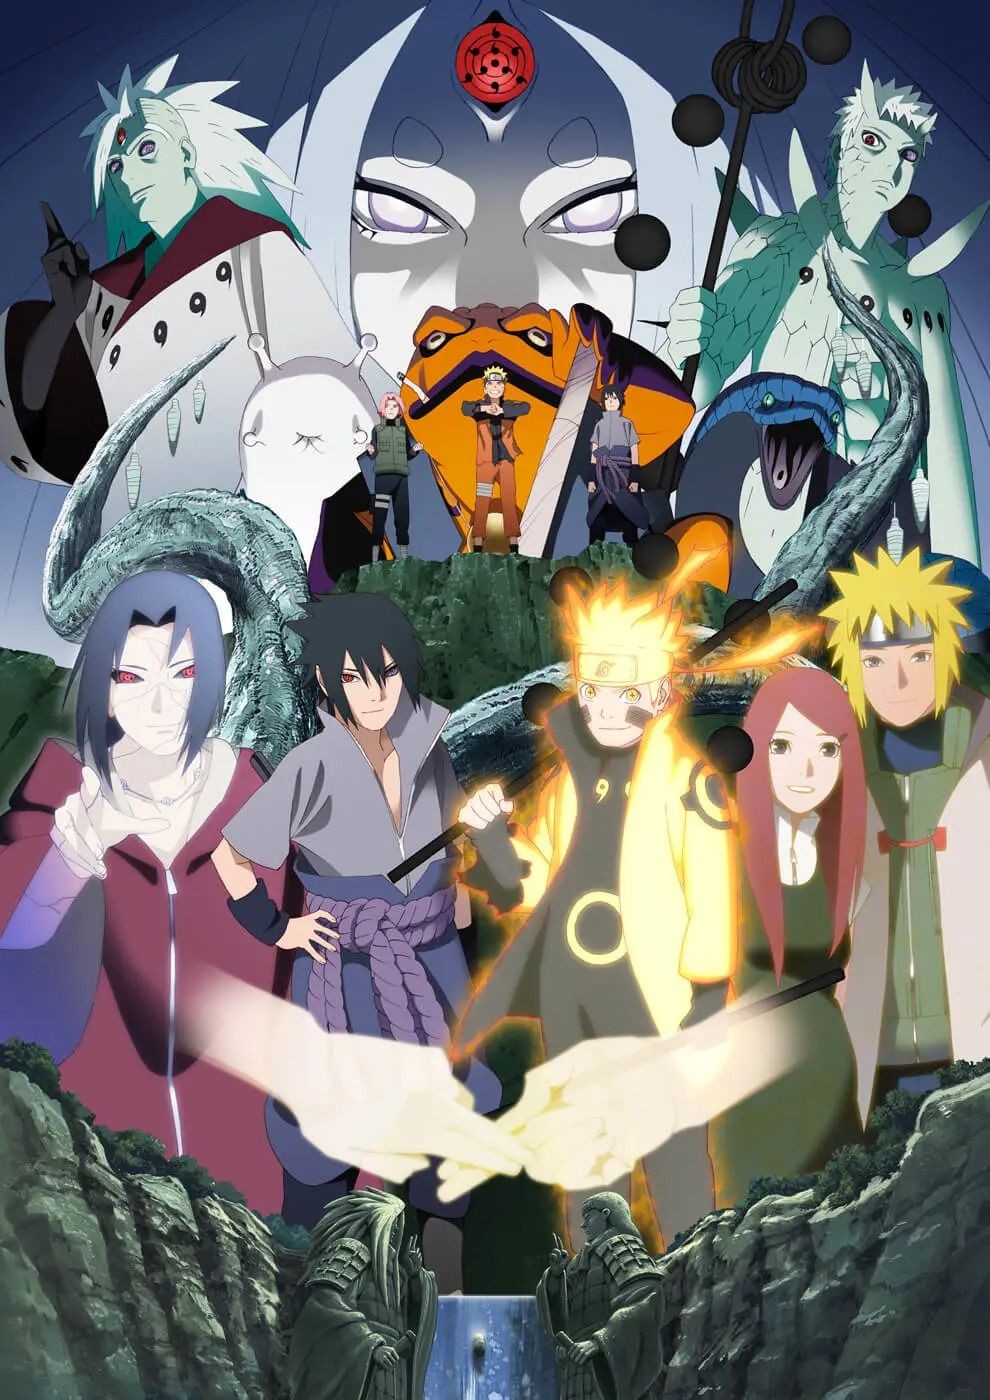 Rayakan 20 Tahun Anime Naruto, ini Gambar Promosinya yang Keren!